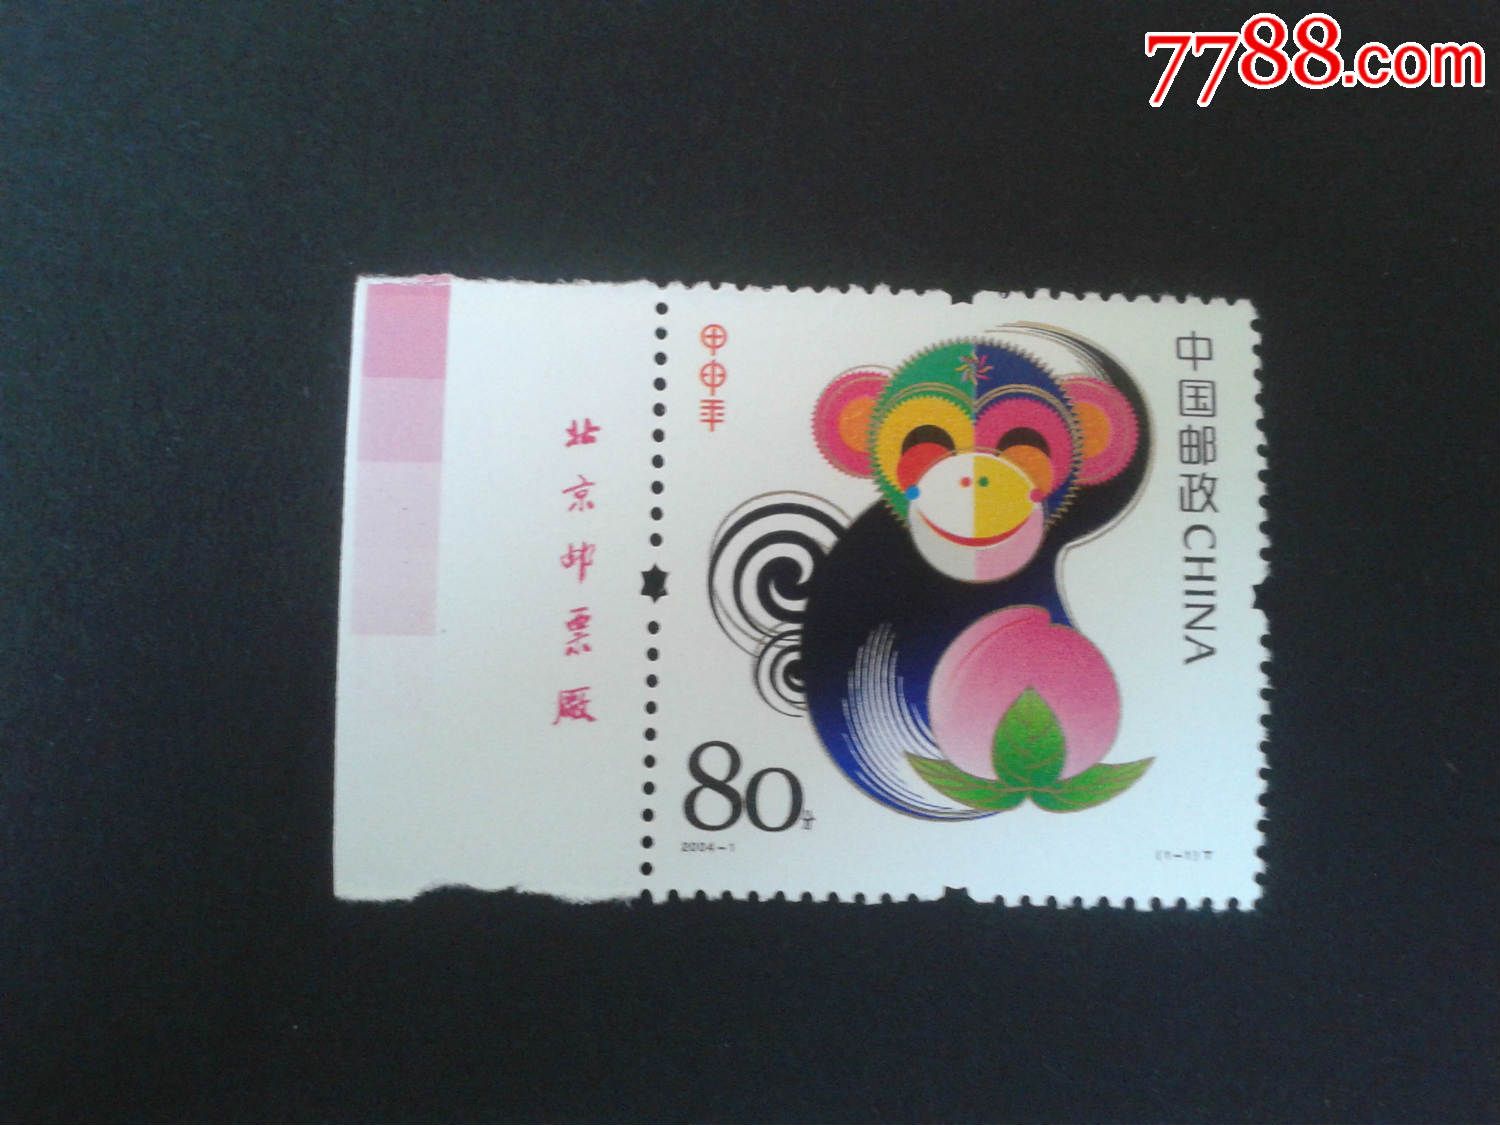 2004-1三轮猴带厂铭色标新一套,新中国邮票,编